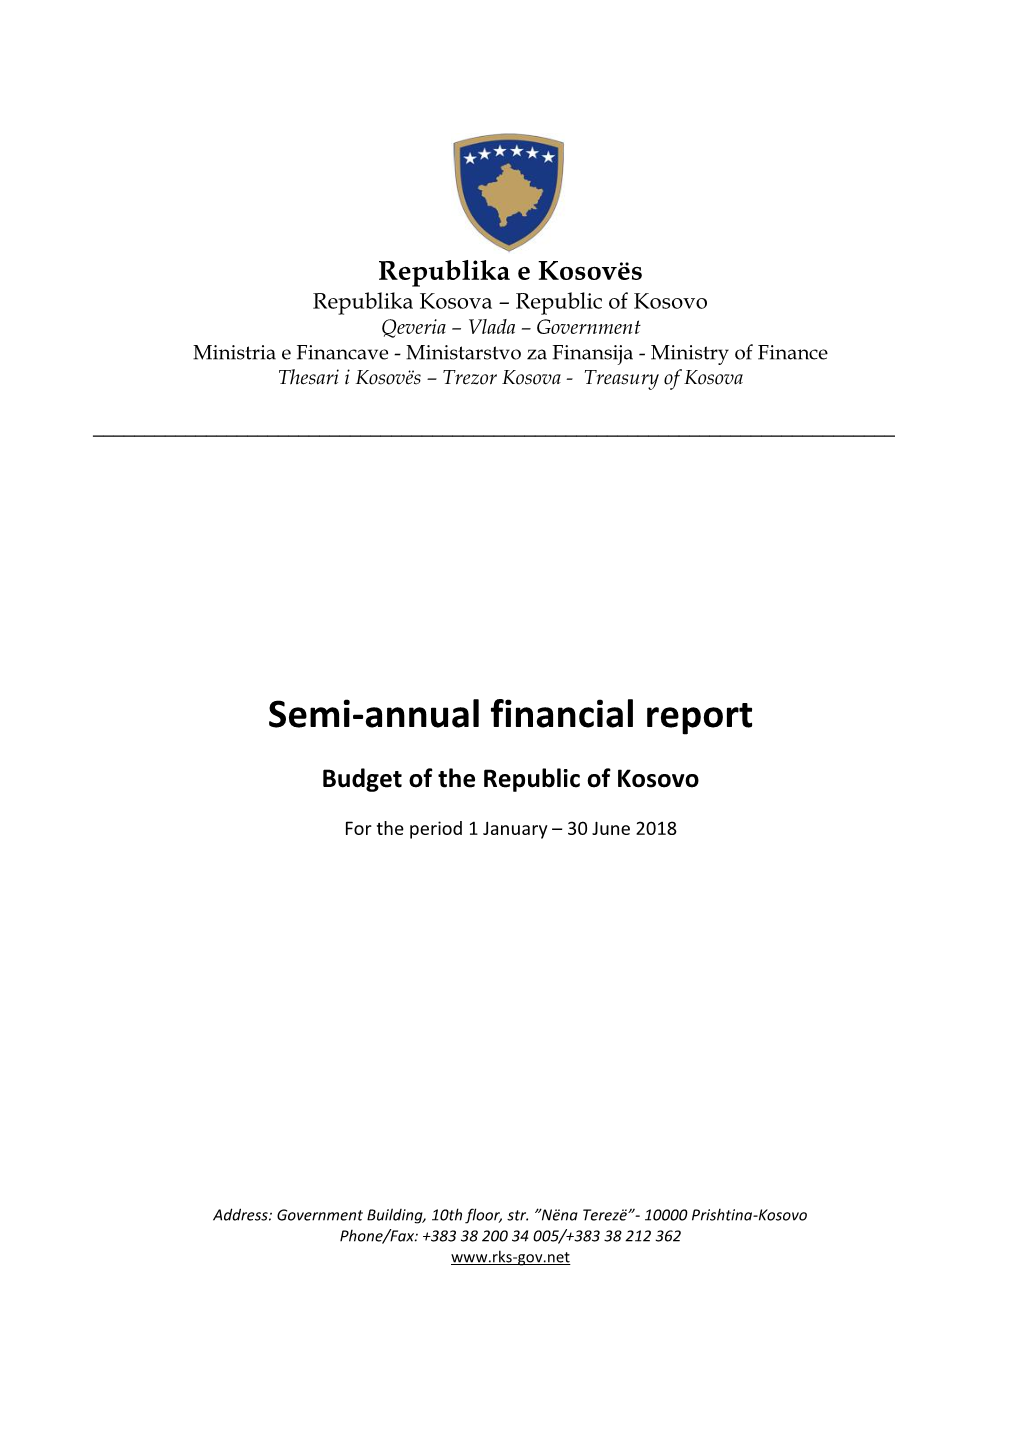 Semi-Annual Financial Report